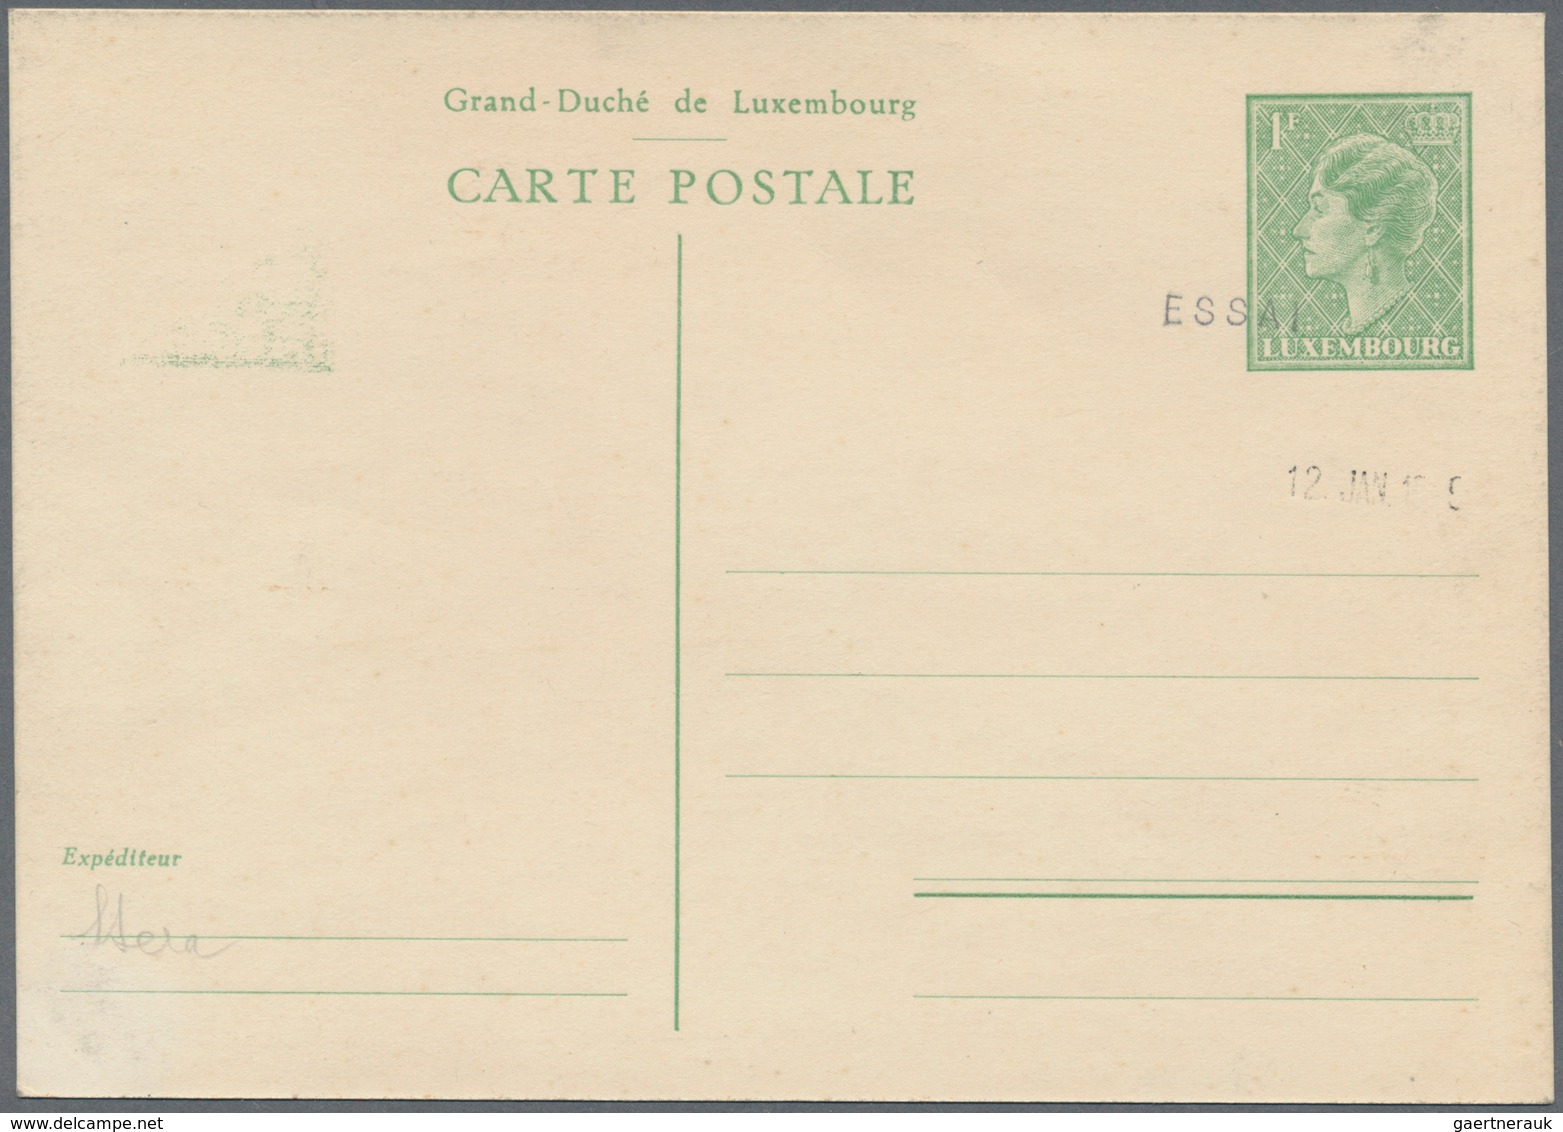 27290 Luxemburg - Ganzsachen: 1874/2010, umfangreiche Spezial-Sammlung "Ganzsachenkarten und Umschläge" mi